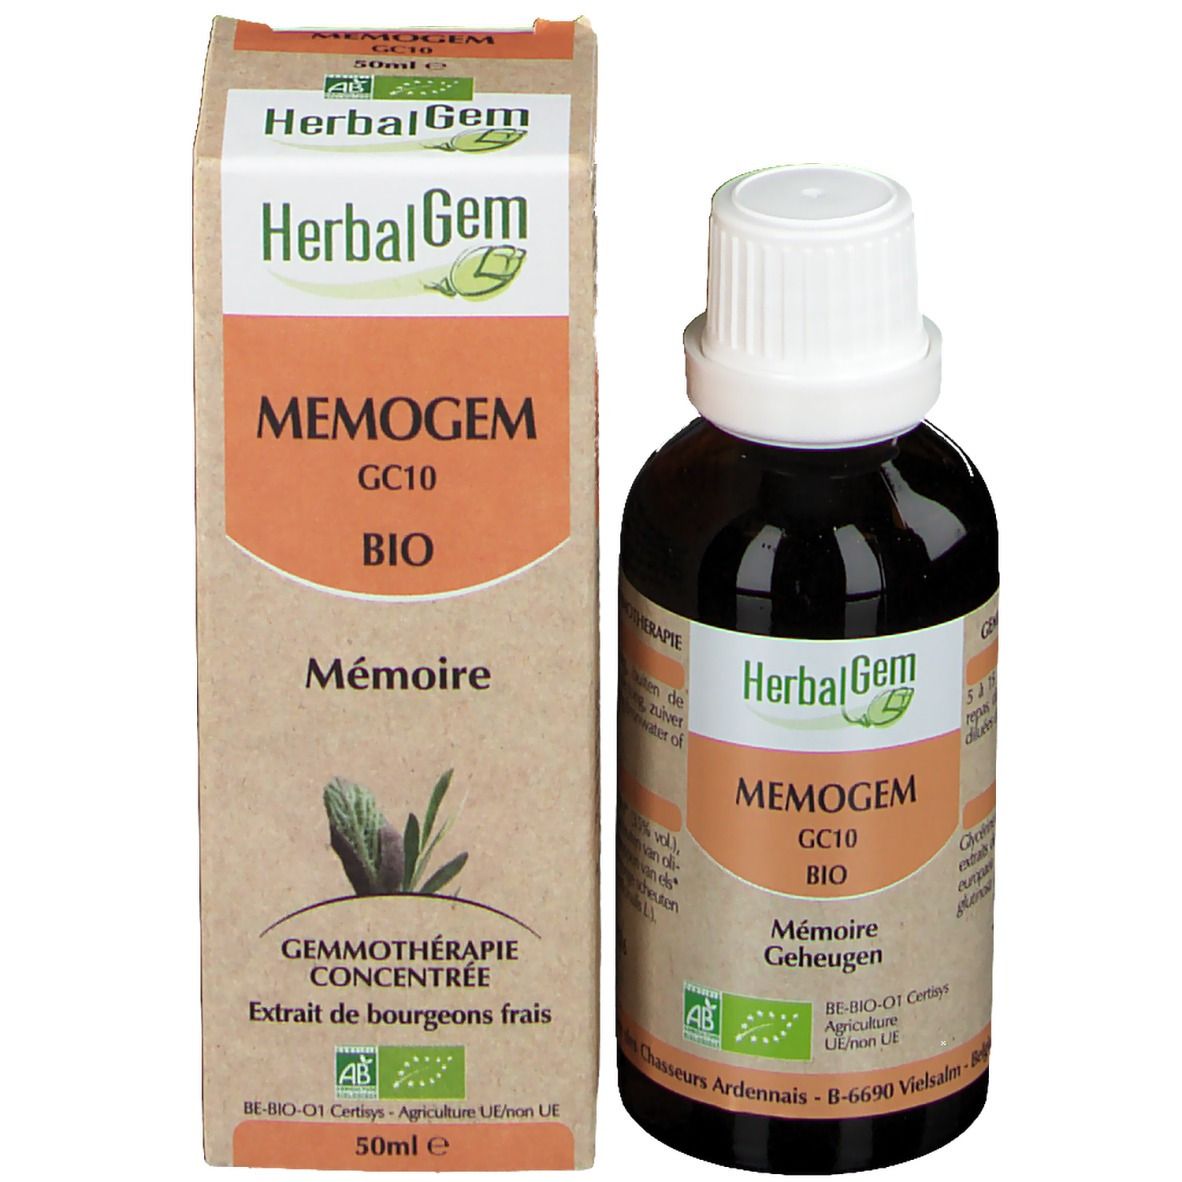 HerbalGem MEMOGEM